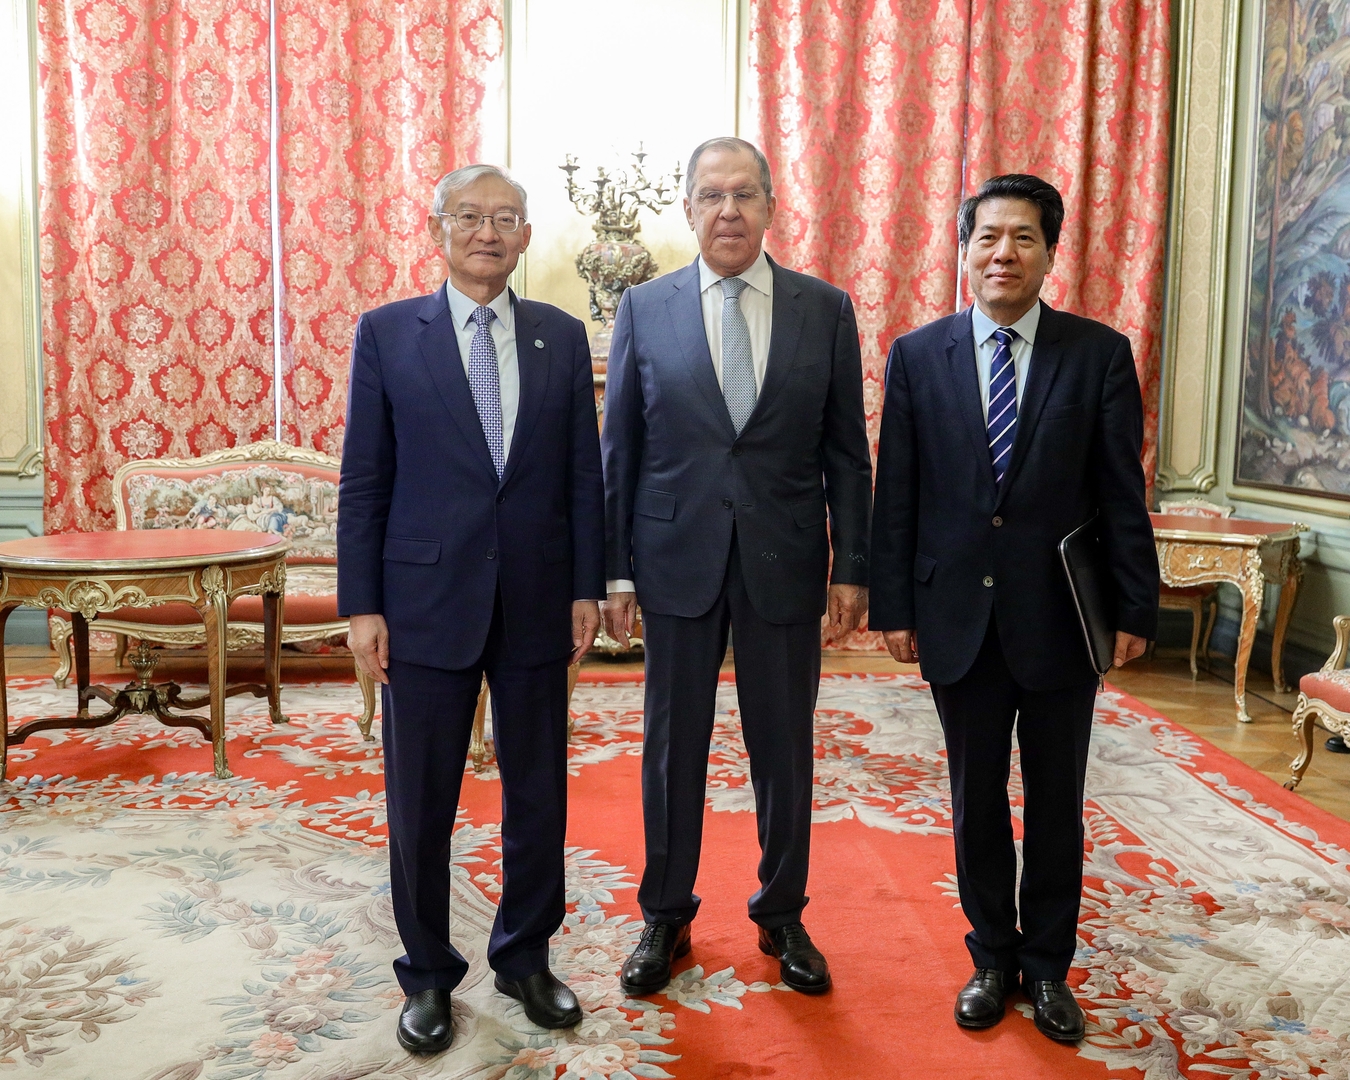 وزير الخارجية الروسي سيرغي لافروف مع المبعوث الصيني لشؤون أوراسيا لي هوي (اليمين) والأمين العام لمنظمة شنغهاي للتعاون تشانغ مينغ (اليسار).